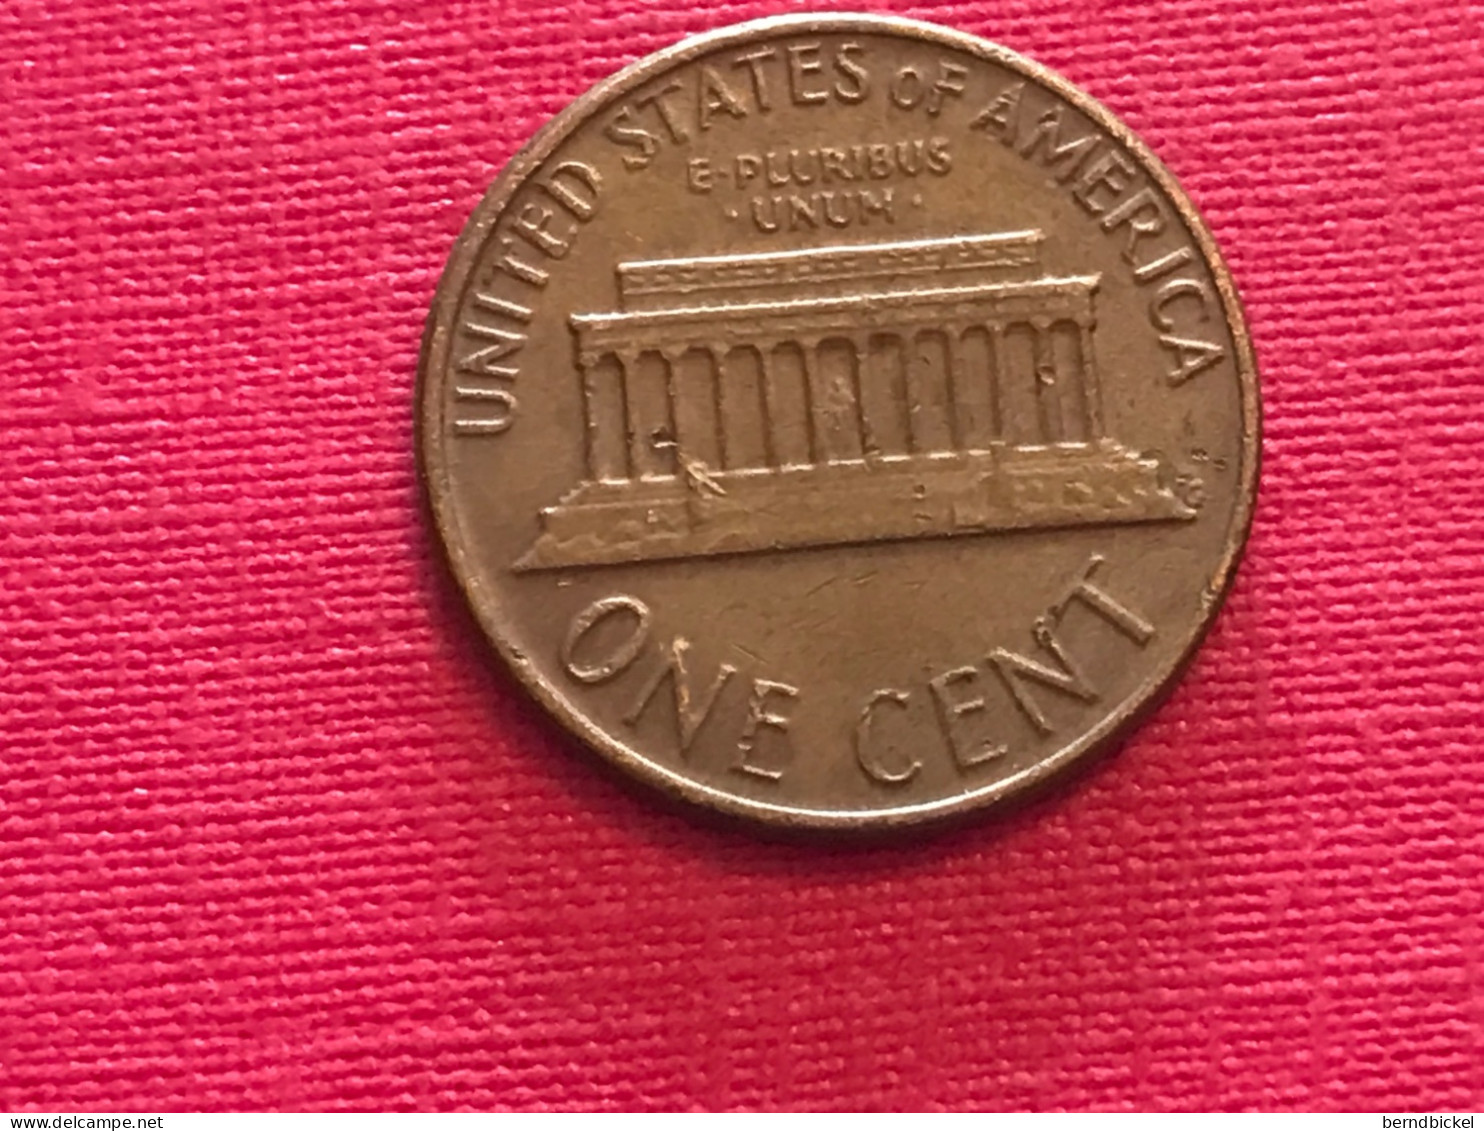 Münze Münzen Umlaufmünze USA 1 Cent 1977Münzzeichen D - 1959-…: Lincoln, Memorial Reverse